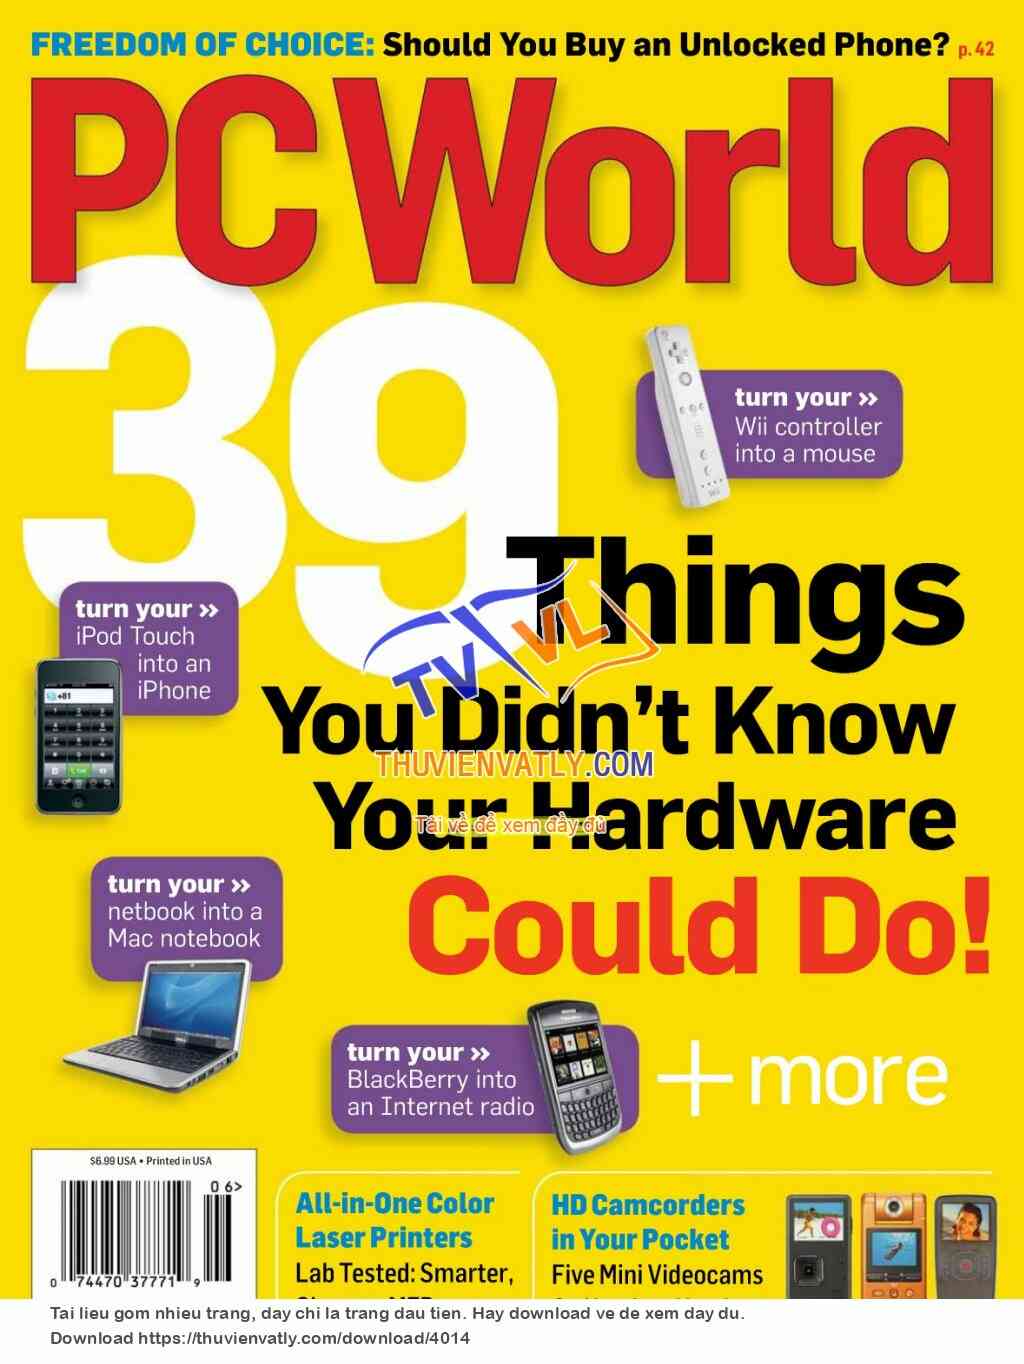 PC World Magazine June 2009